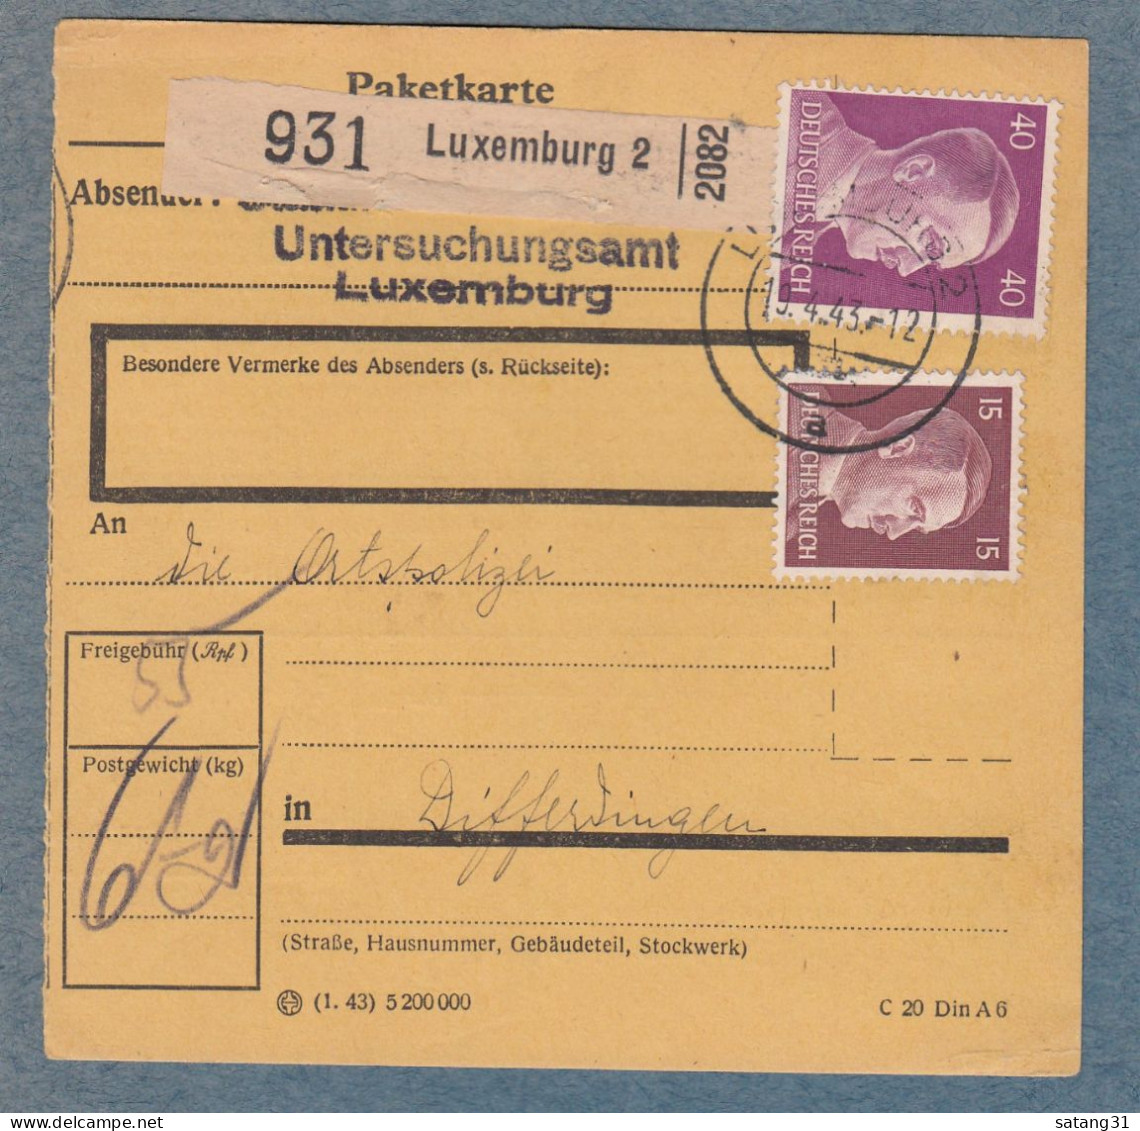 PAKETKARTE AUS DEM UNTERSUCHUNGSAMT IN LUXEMBURG AN DIE ORTSPOLIZEI IN DIFFERDINGEN. - 1940-1944 Duitse Bezetting